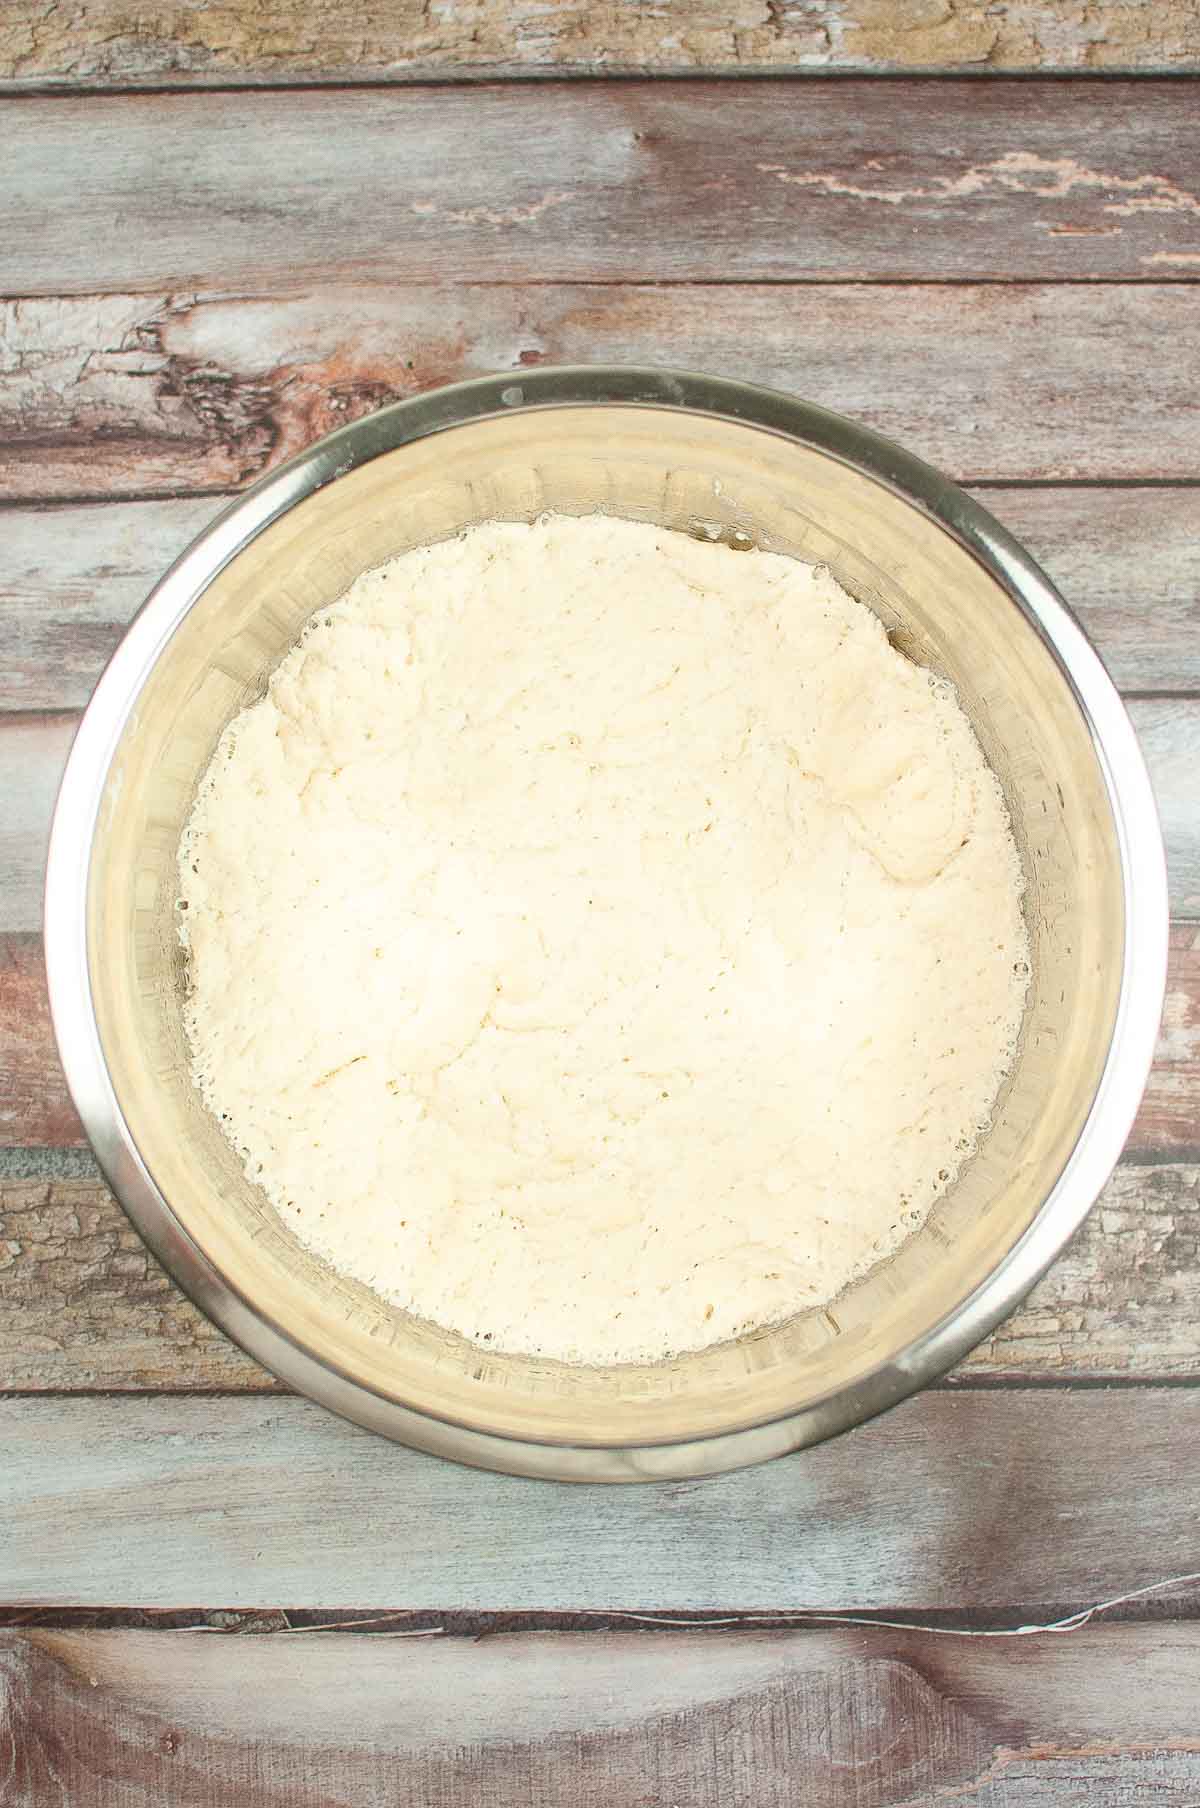 Bowl of focaccia dough